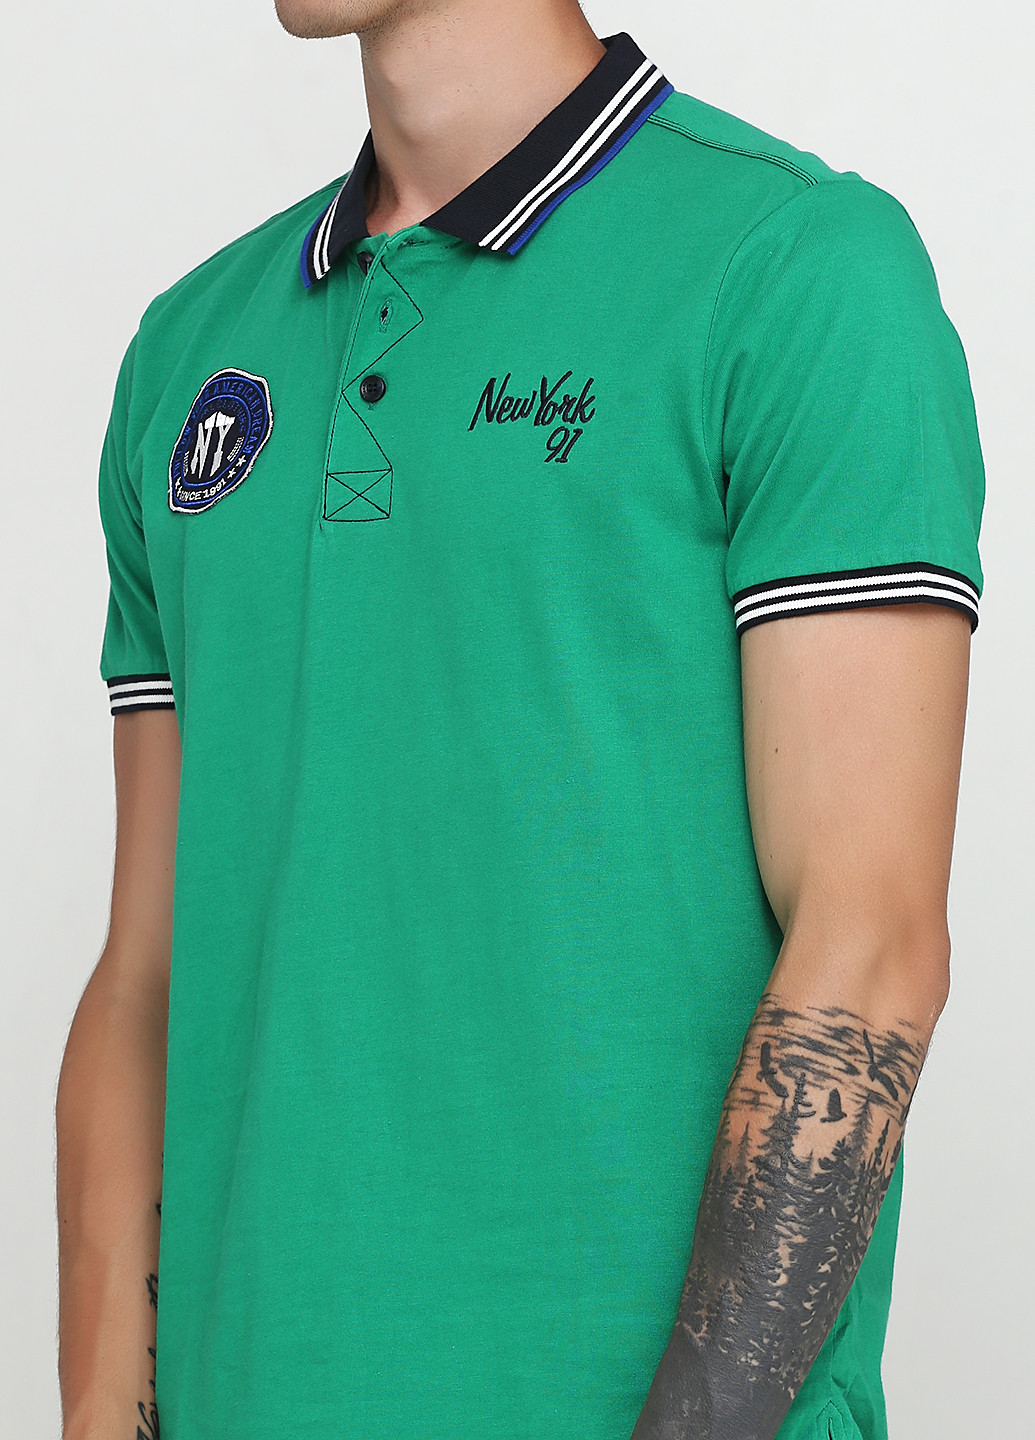 Зеленая футболка-поло для мужчин SELA с надписью